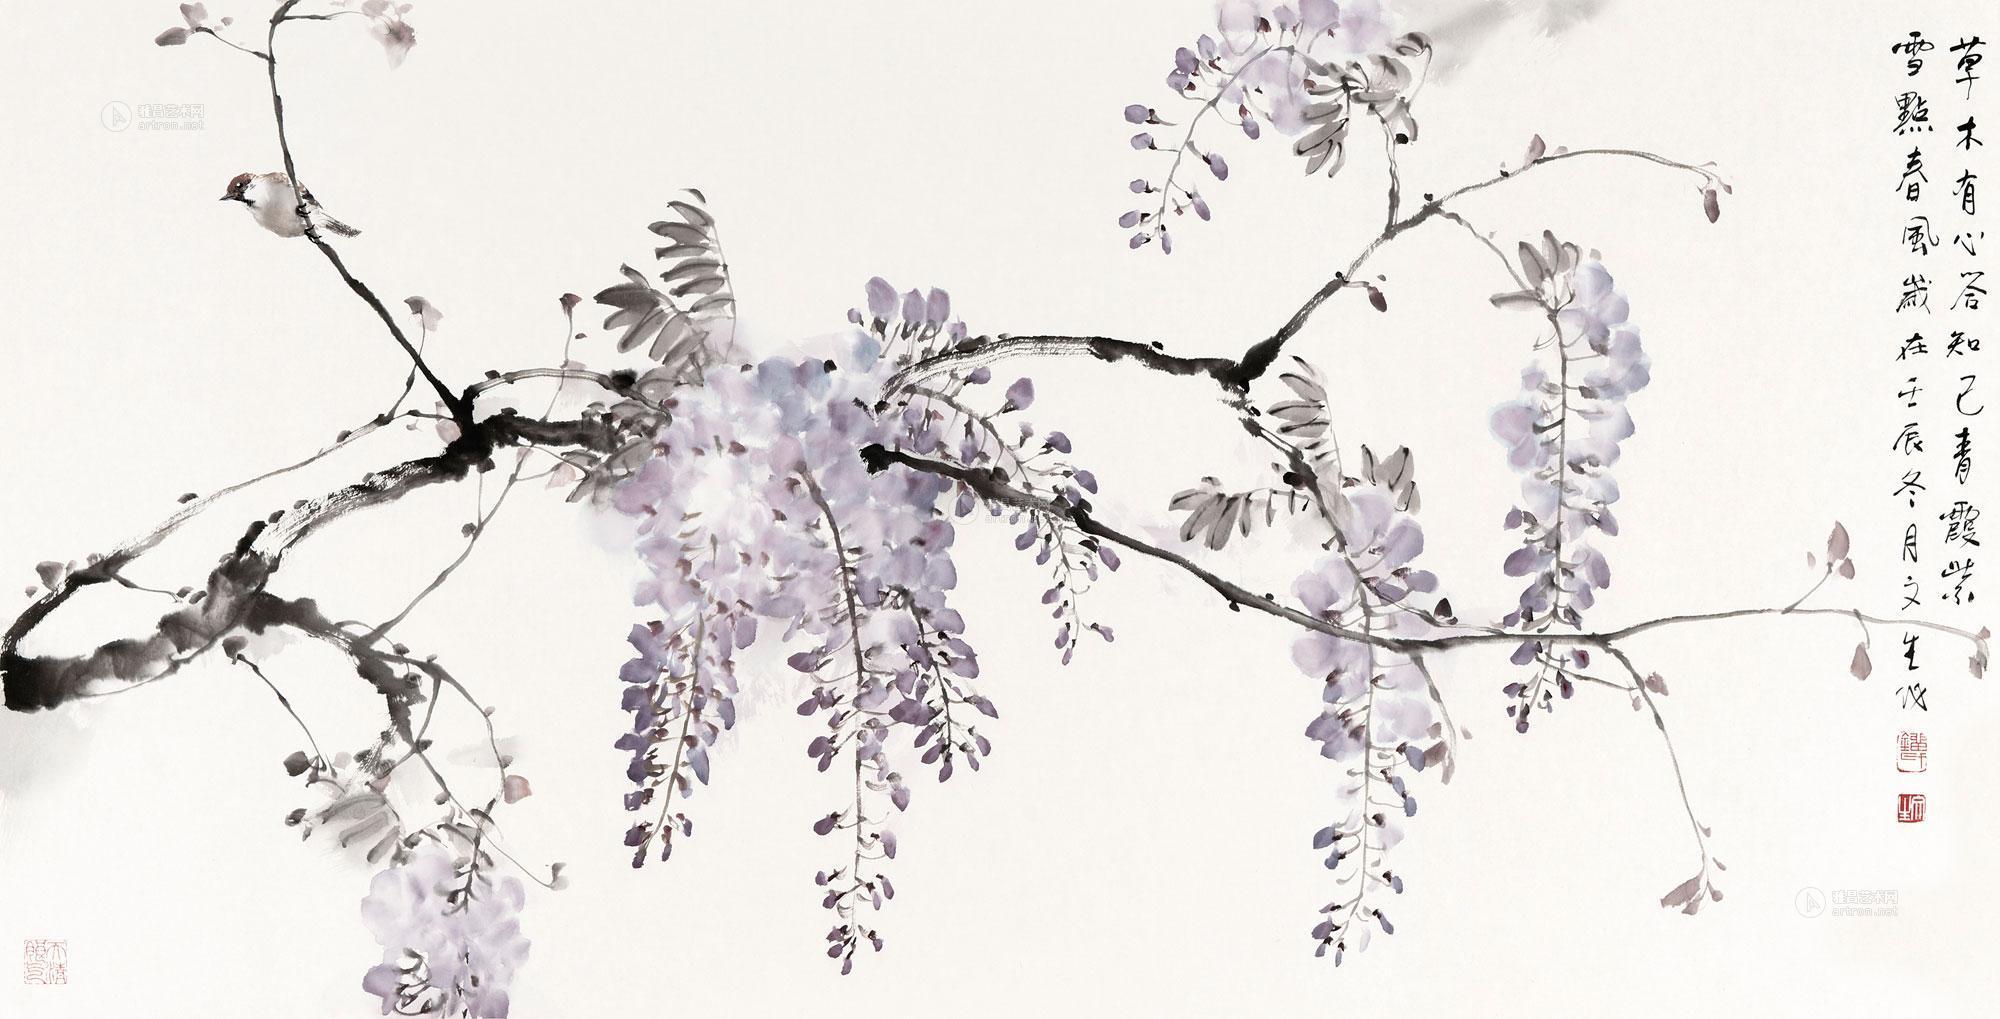 紫藤横幅作品欣赏图片